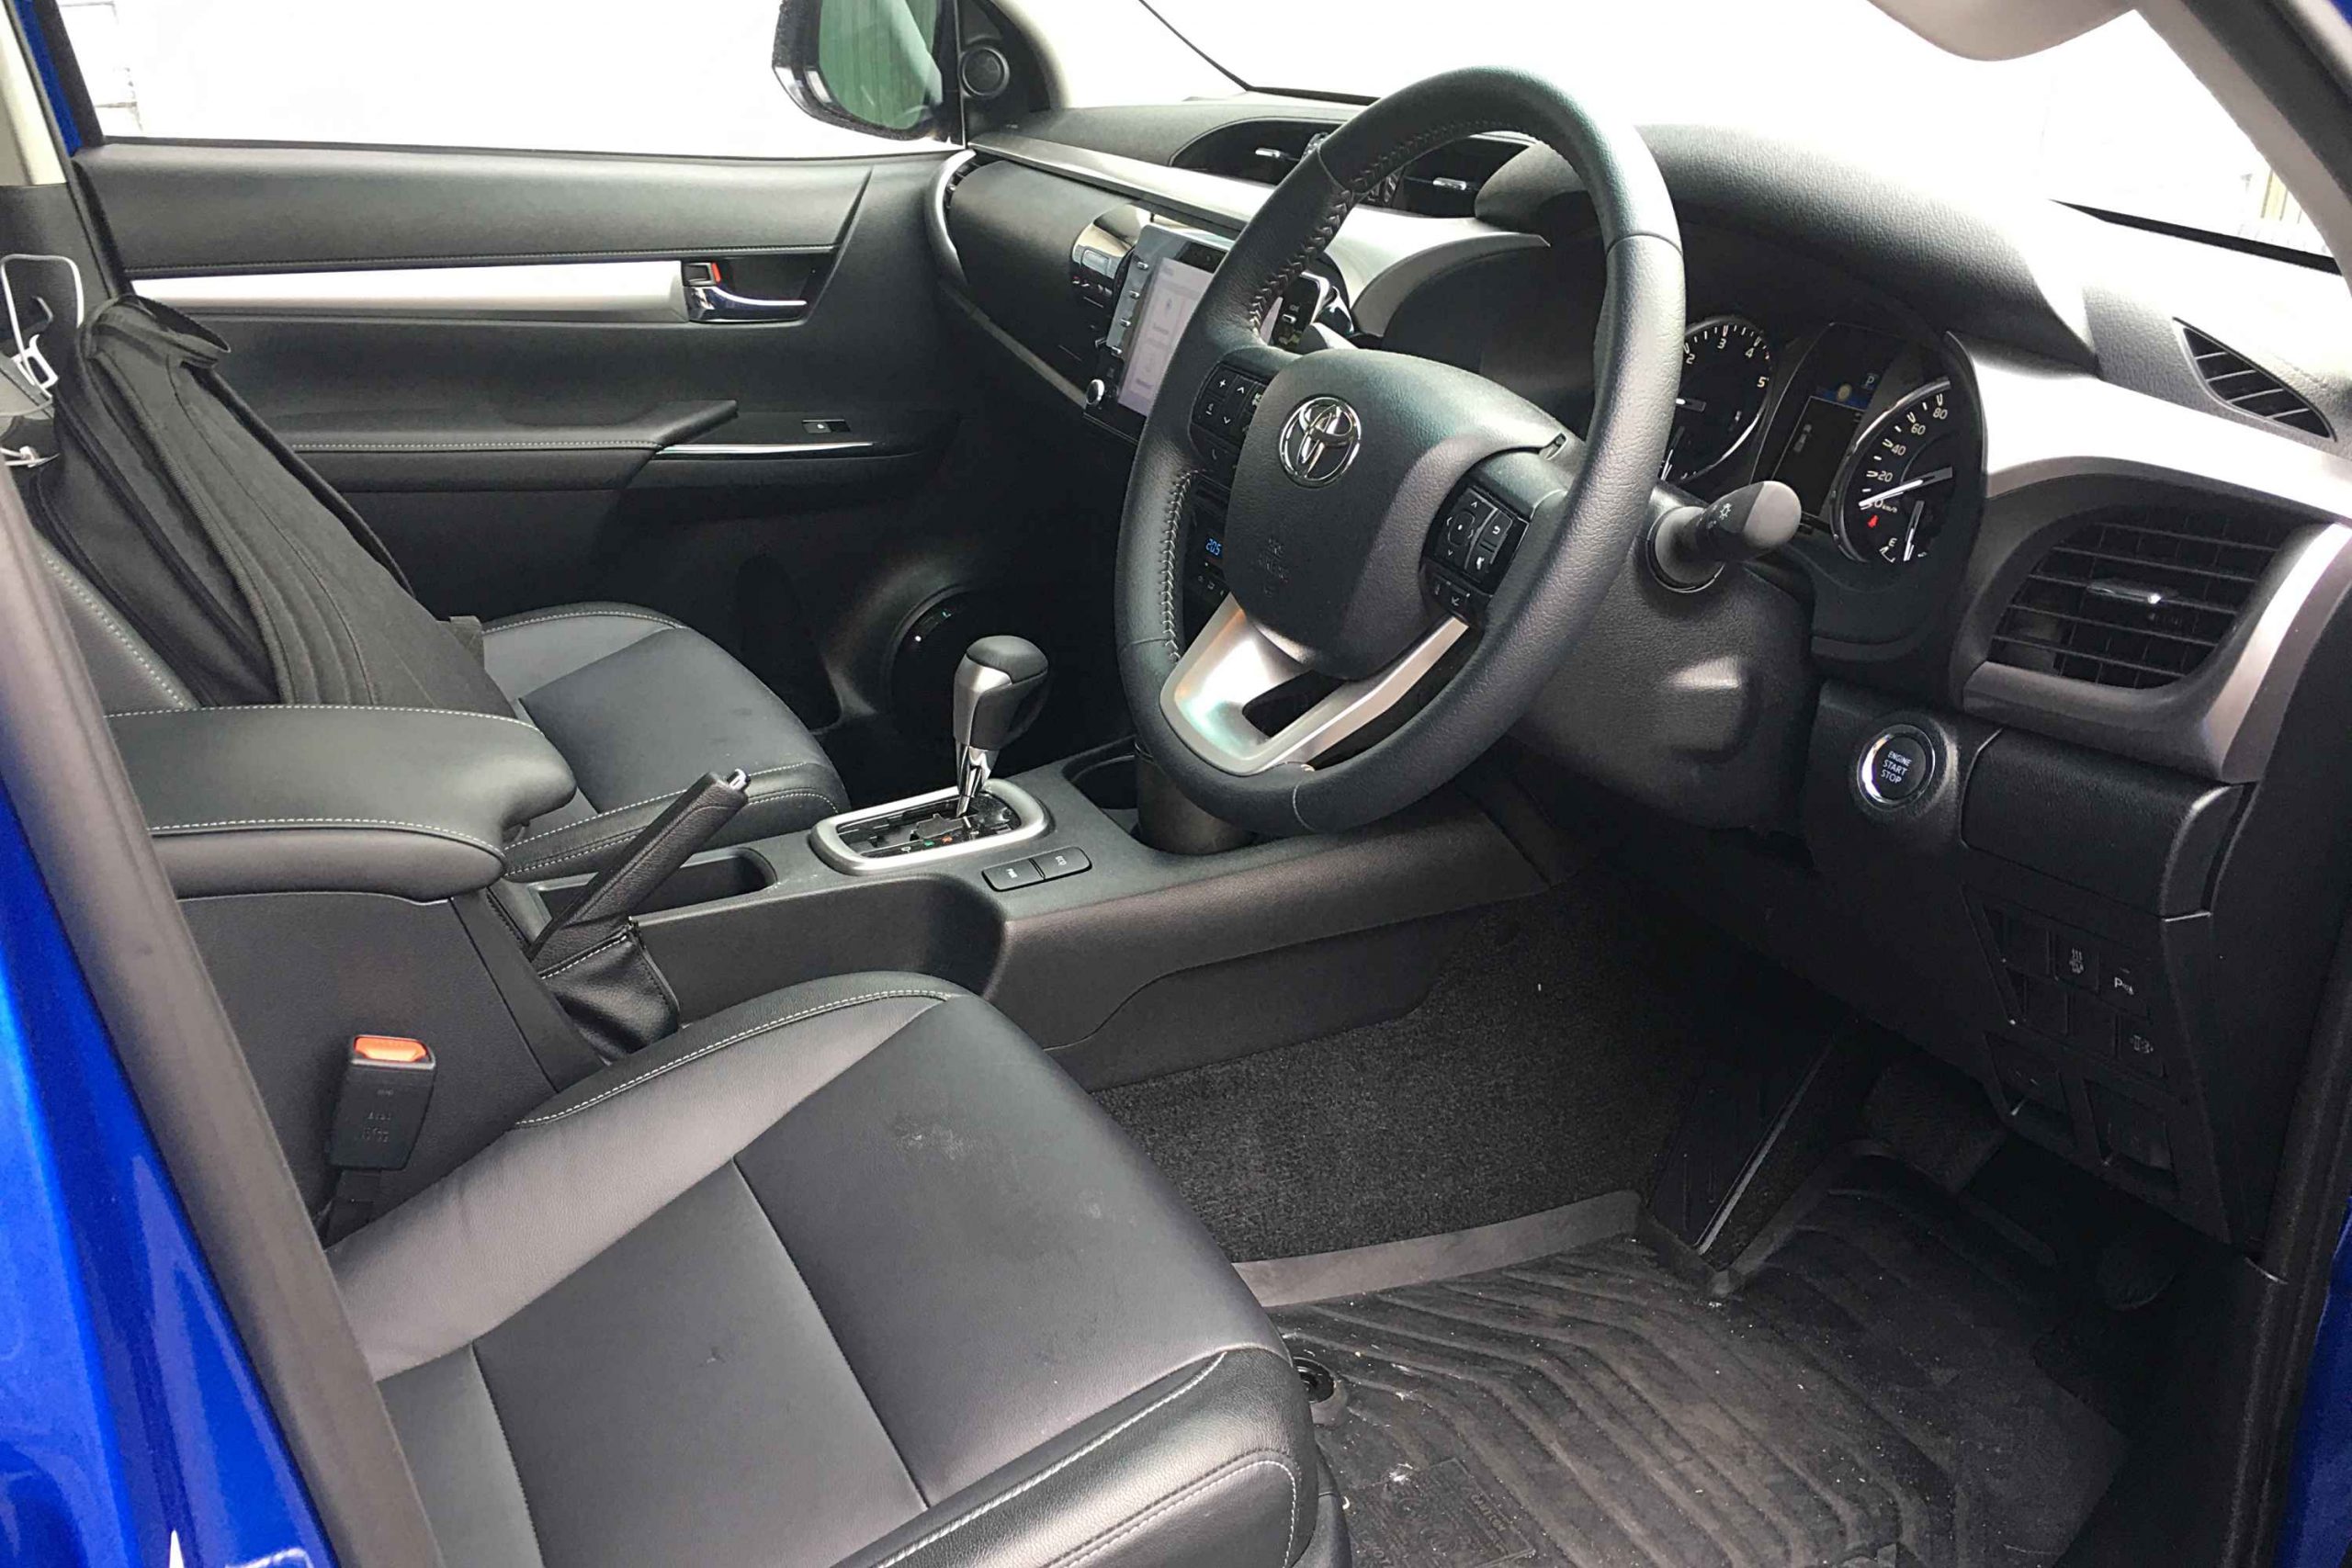 2021 Toyota HiLux SR5 Premium interior